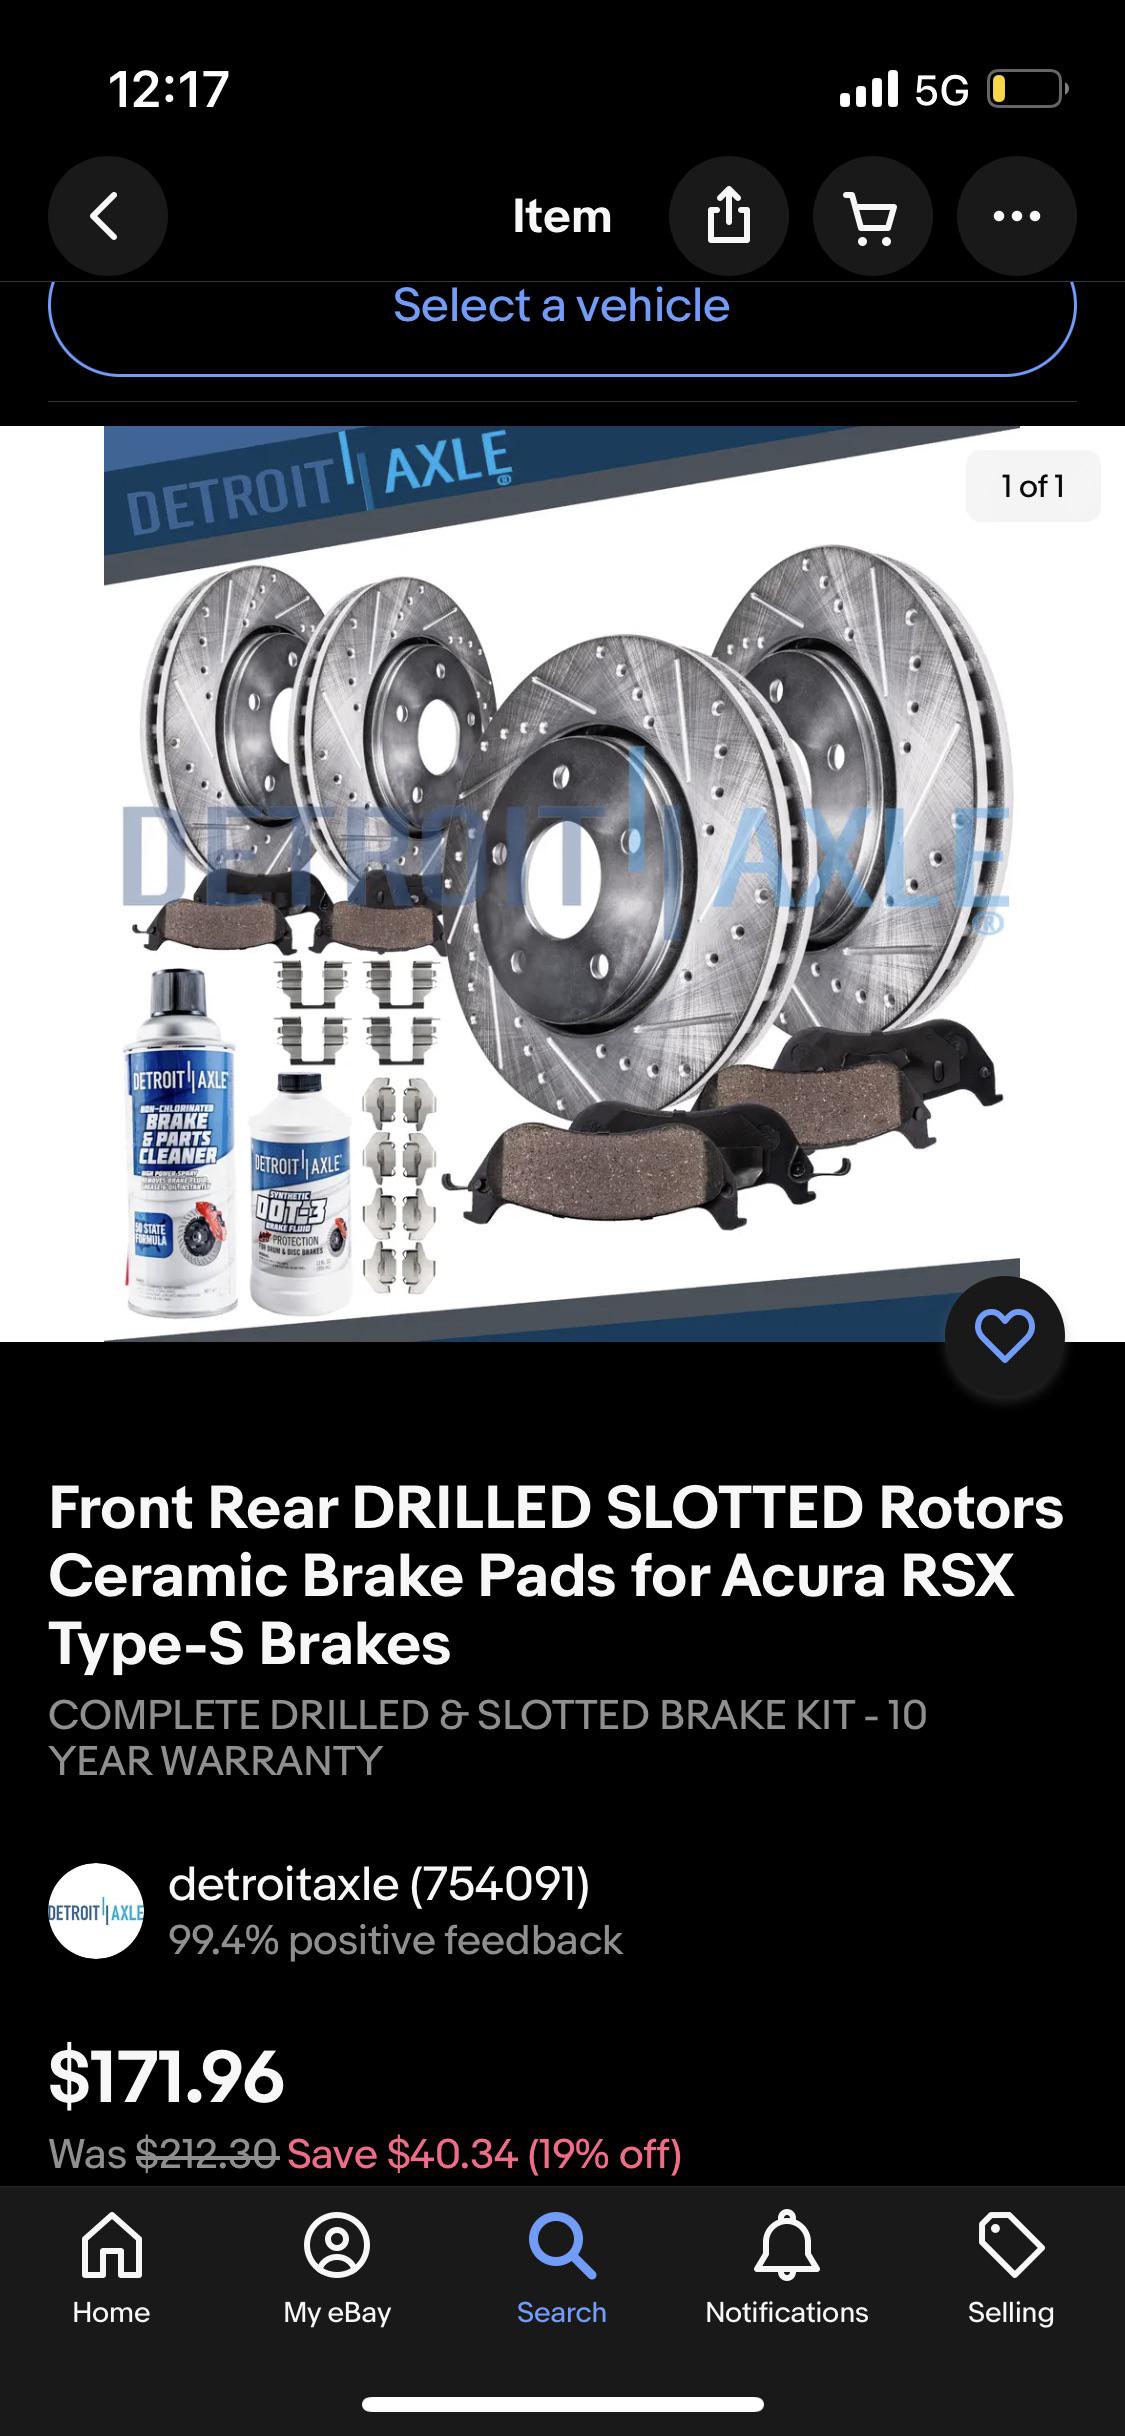 Are Detroit Axle Rotors Any Good